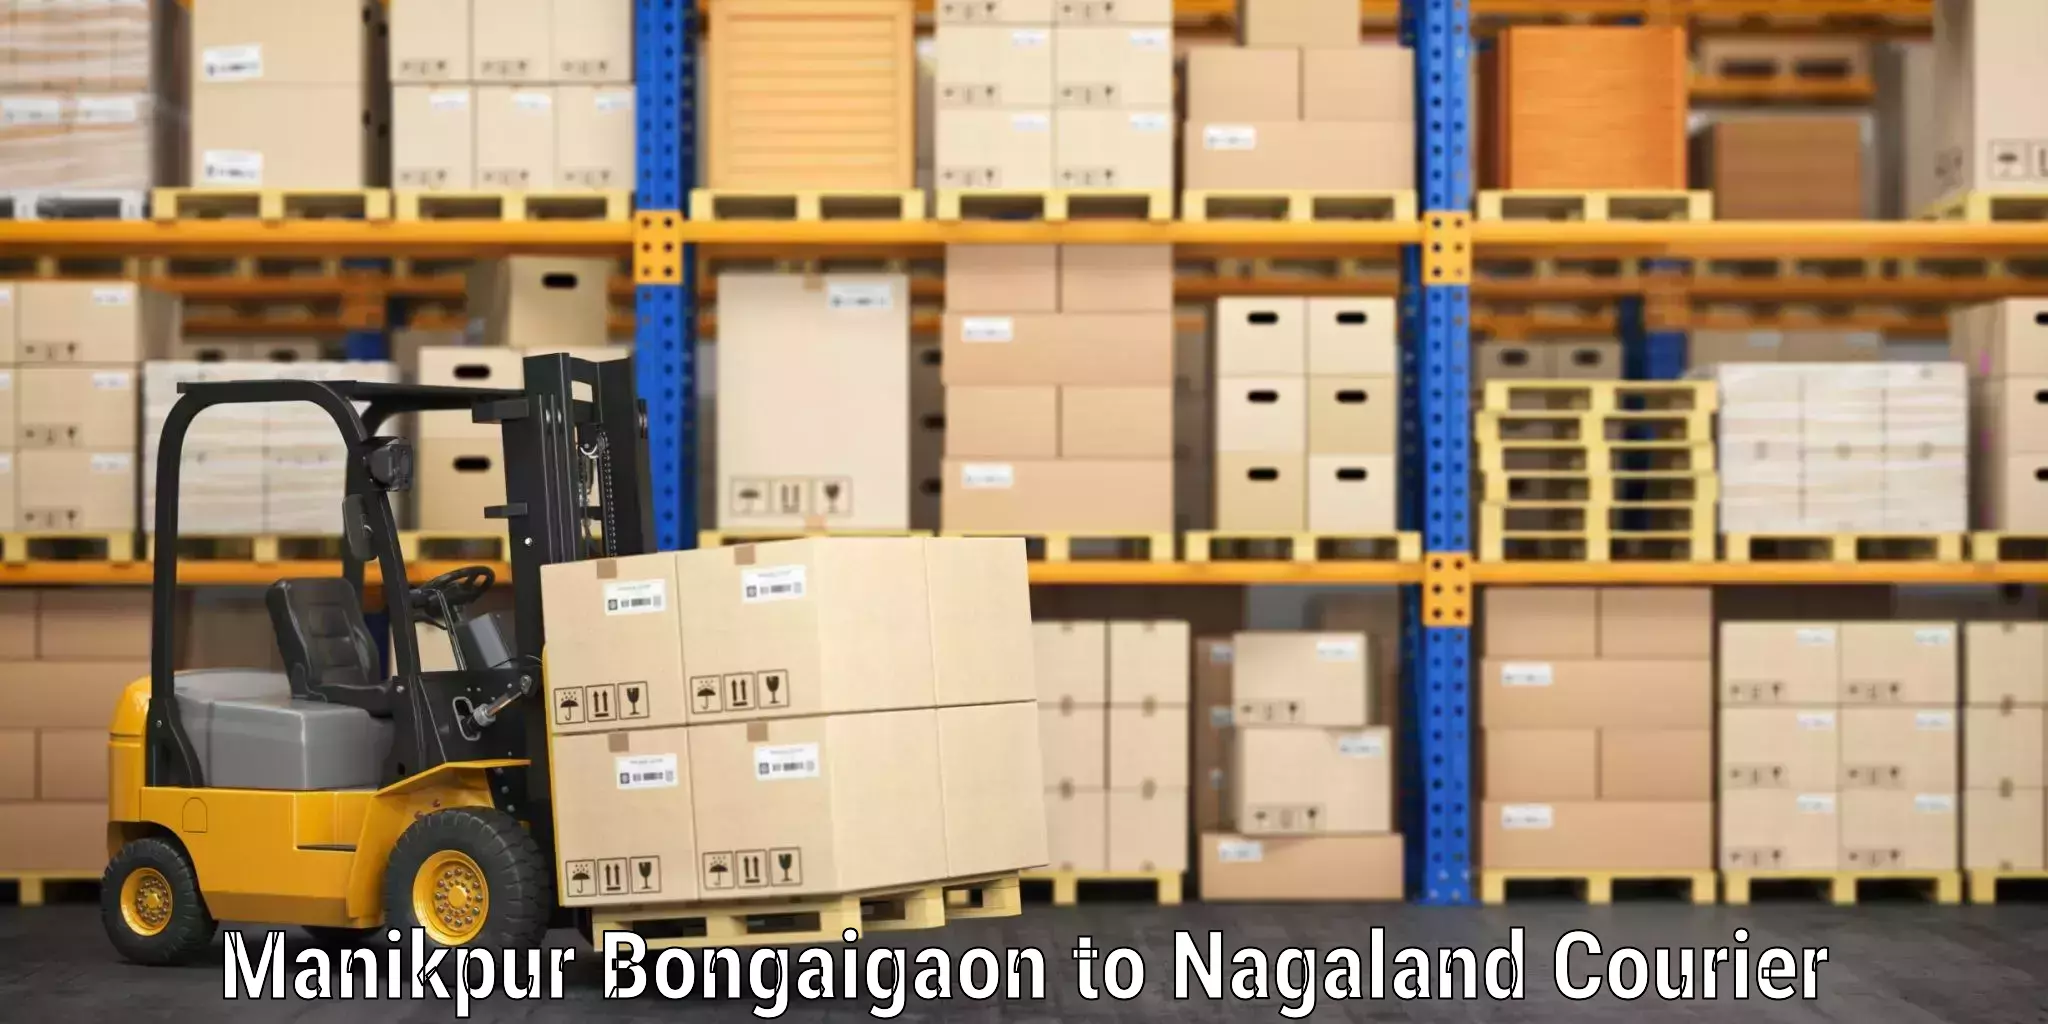 Urban luggage shipping Manikpur Bongaigaon to Longleng